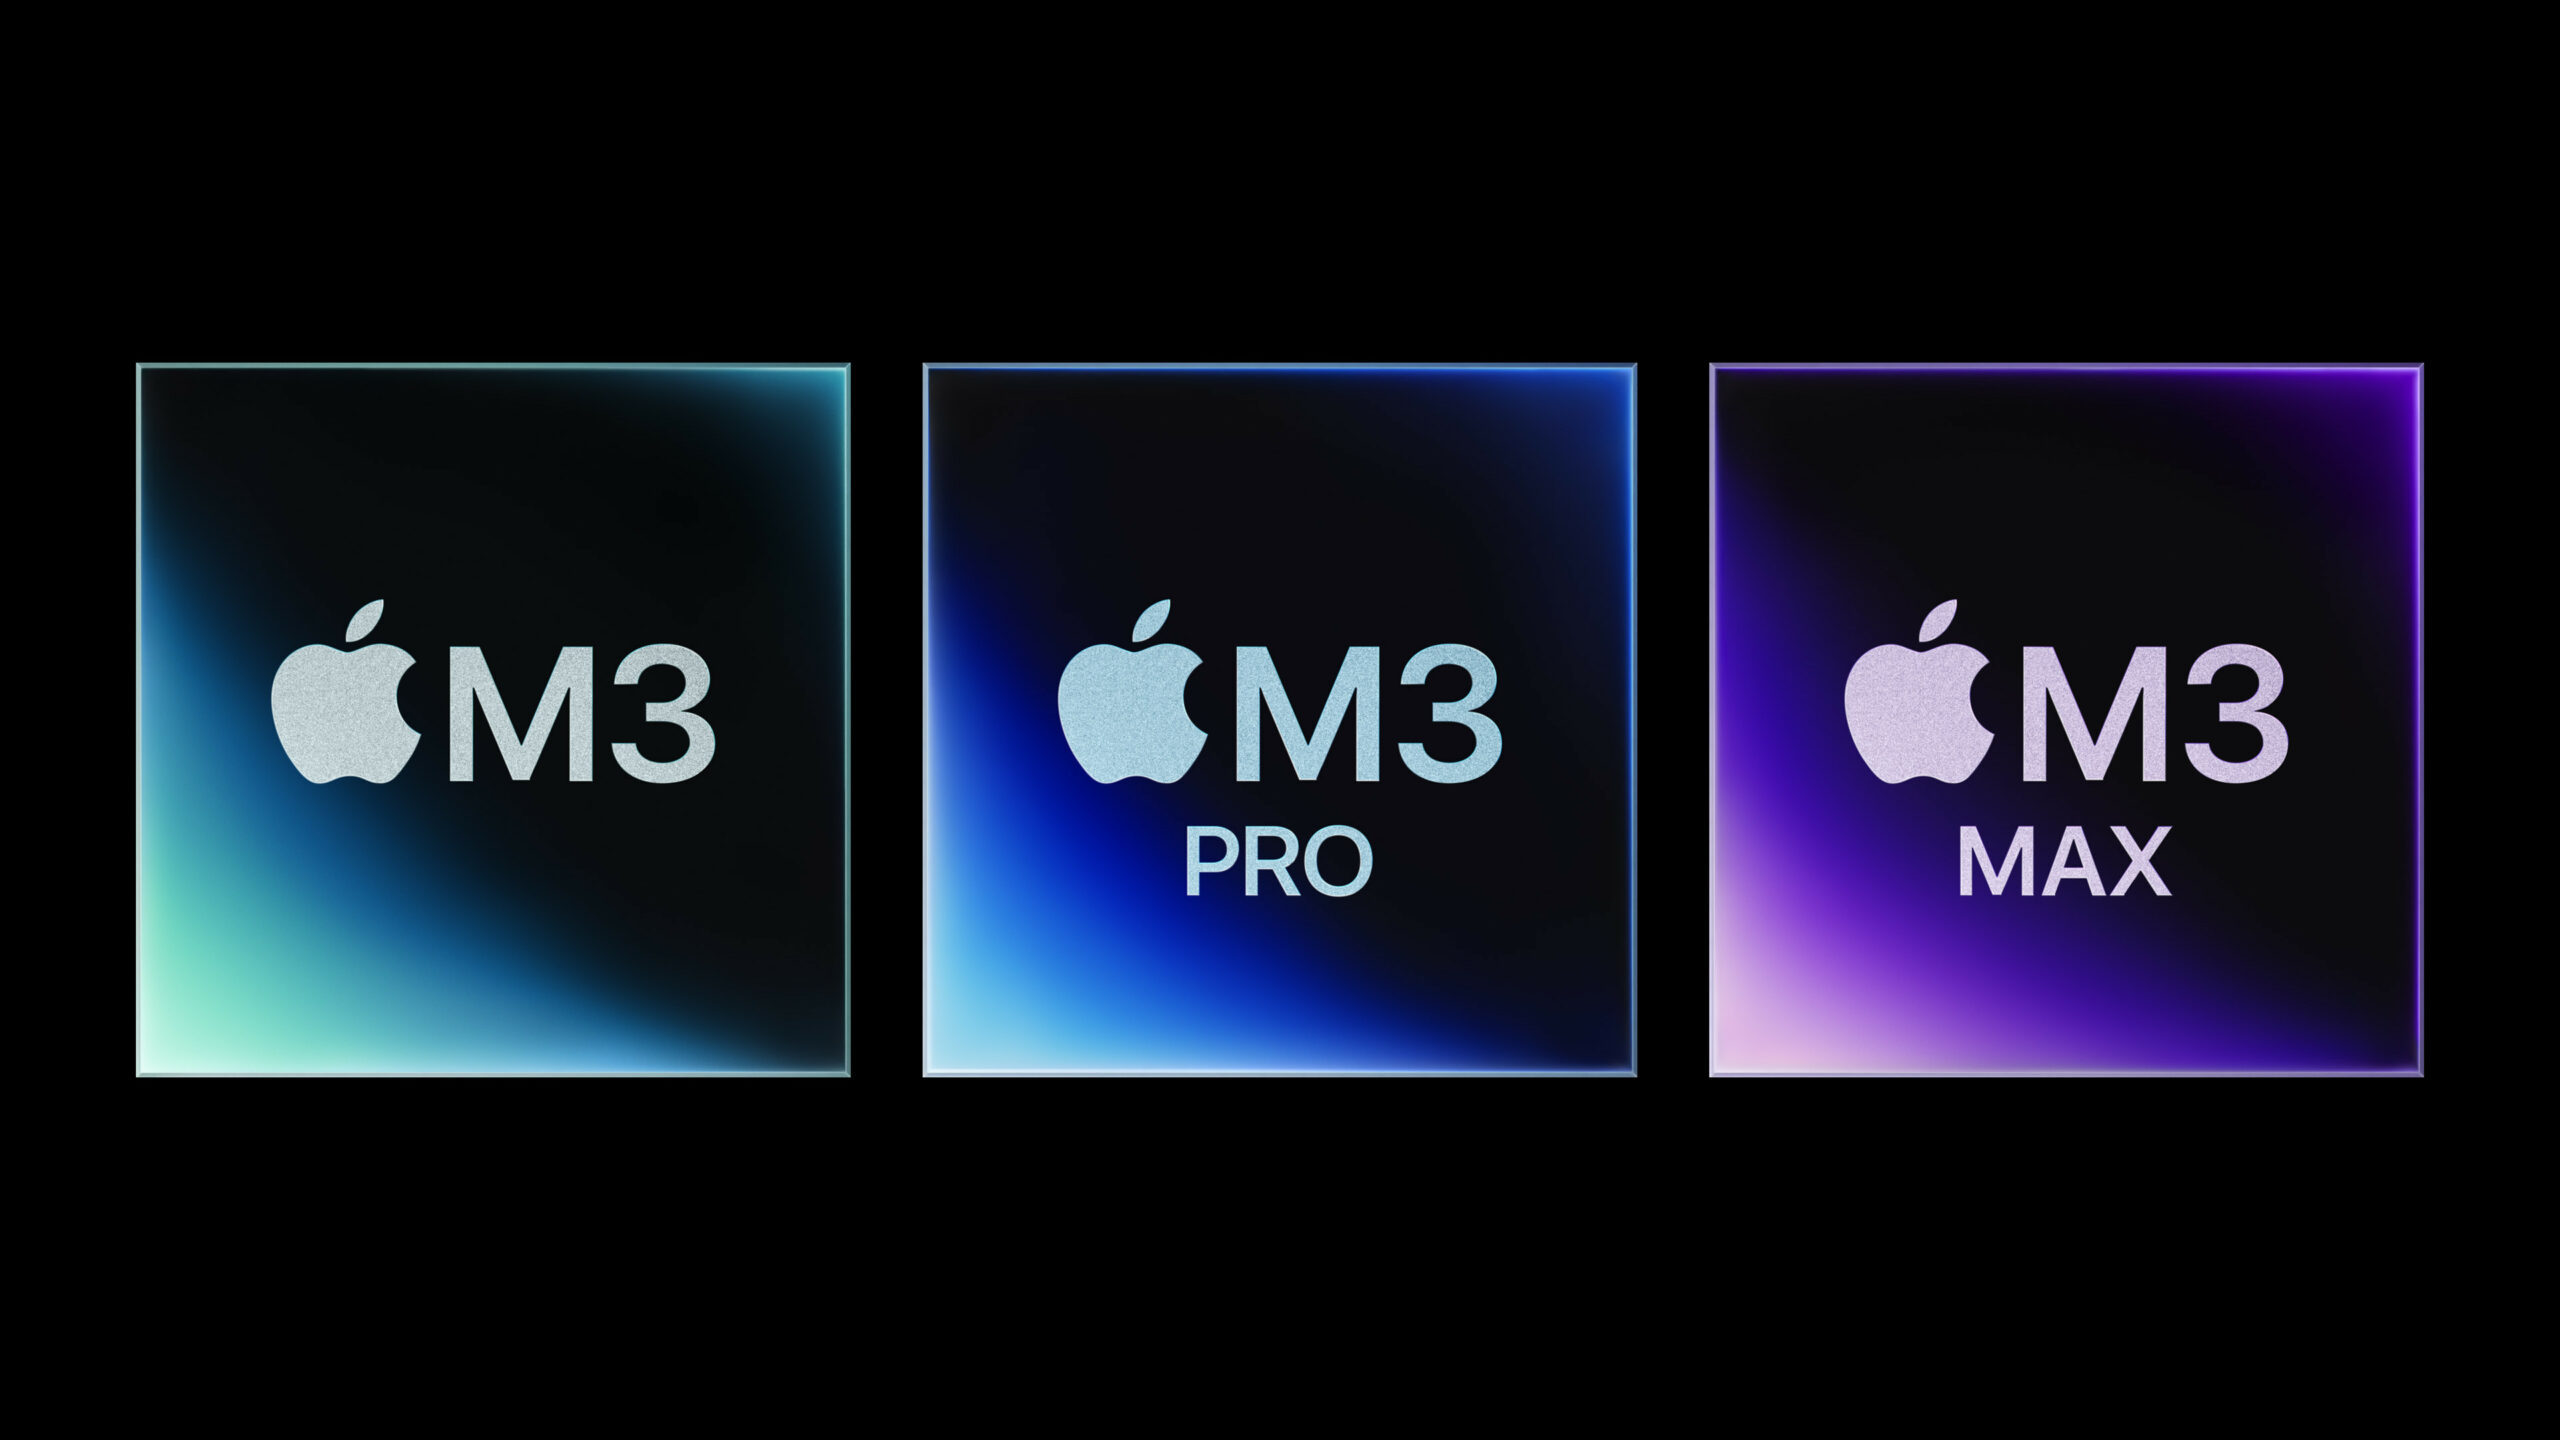 Mit der energieeffizienten Performance des M3, M3 Pro und M3 Max ist für alle ein MacBook Pro dabei